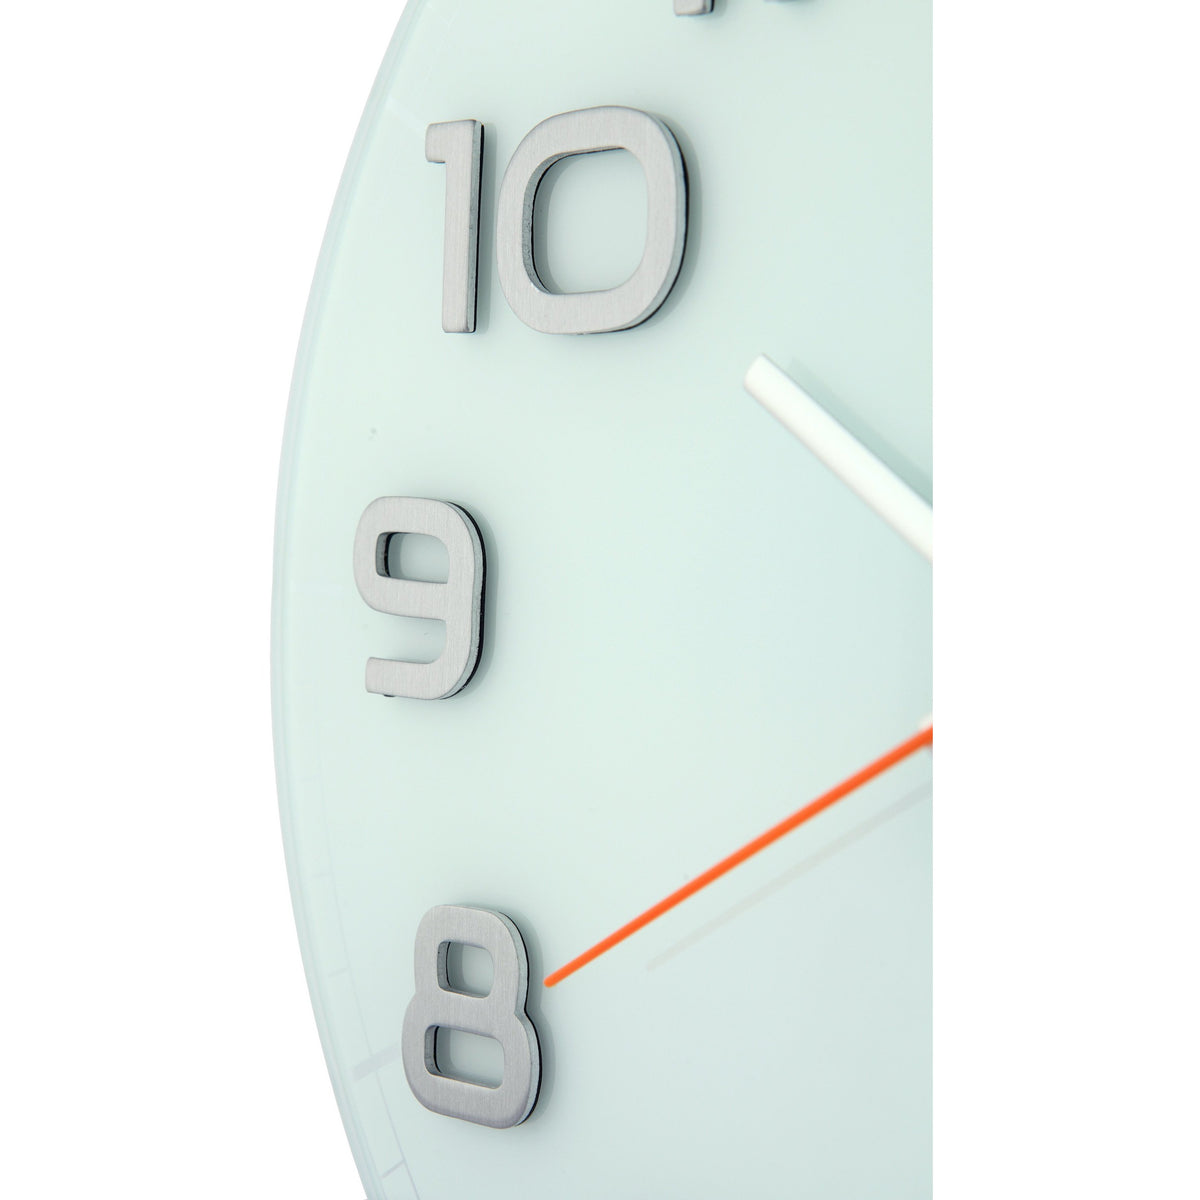 NeXtime - Wall clock -  30 x 3.5 cm - Glass - White - &#39;Classy Round&#39;